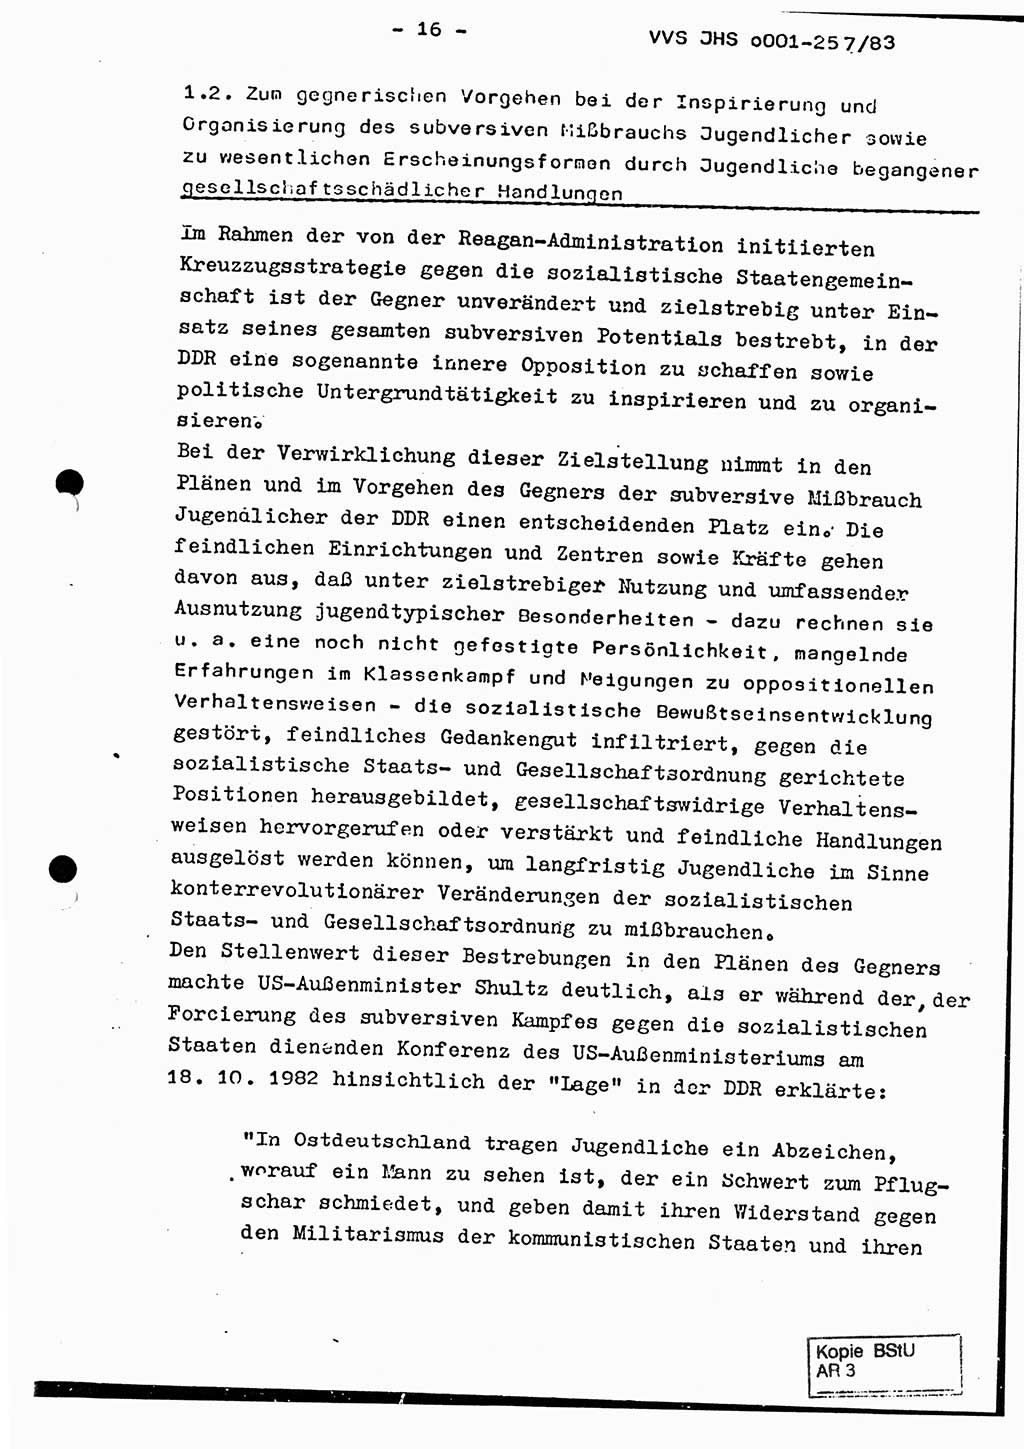 Dissertation, Oberst Helmut Lubas (BV Mdg.), Oberstleutnant Manfred Eschberger (HA IX), Oberleutnant Hans-Jürgen Ludwig (JHS), Ministerium für Staatssicherheit (MfS) [Deutsche Demokratische Republik (DDR)], Juristische Hochschule (JHS), Vertrauliche Verschlußsache (VVS) o001-257/83, Potsdam 1983, Seite 16 (Diss. MfS DDR JHS VVS o001-257/83 1983, S. 16)